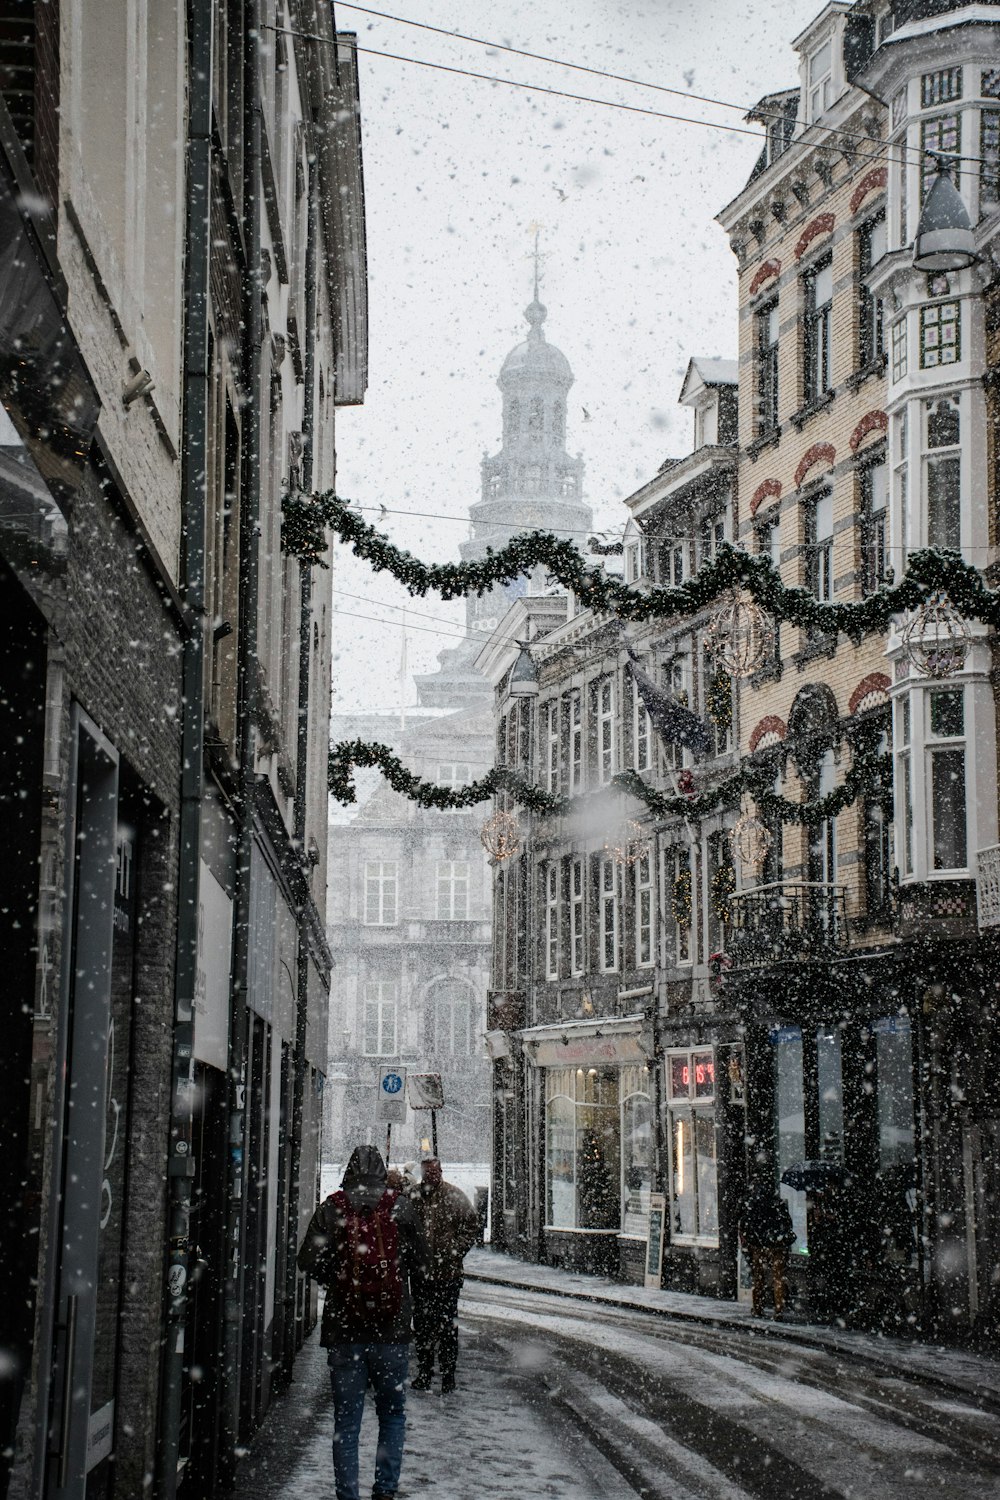 les gens marchent près de la rue entre les bâtiments bruns pendant la saison de neige ;